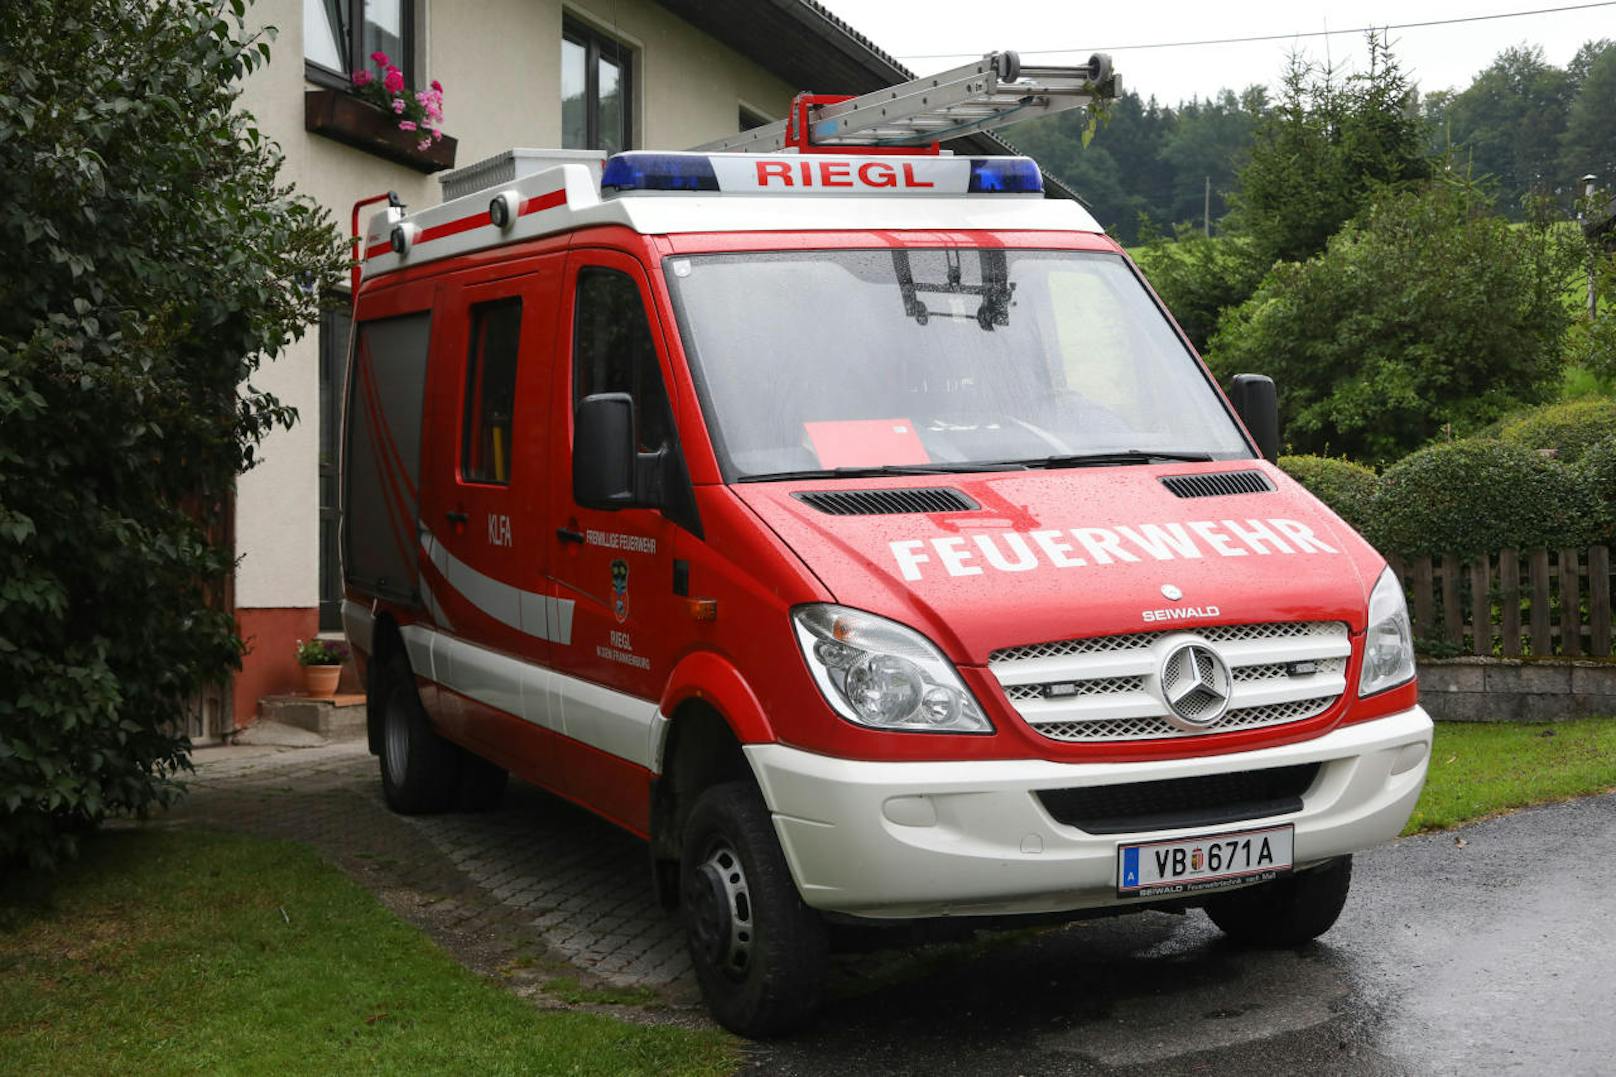 Eine Pflegerin soll den Brand in einem Wohnhaus in Frankenburg gelegt haben.